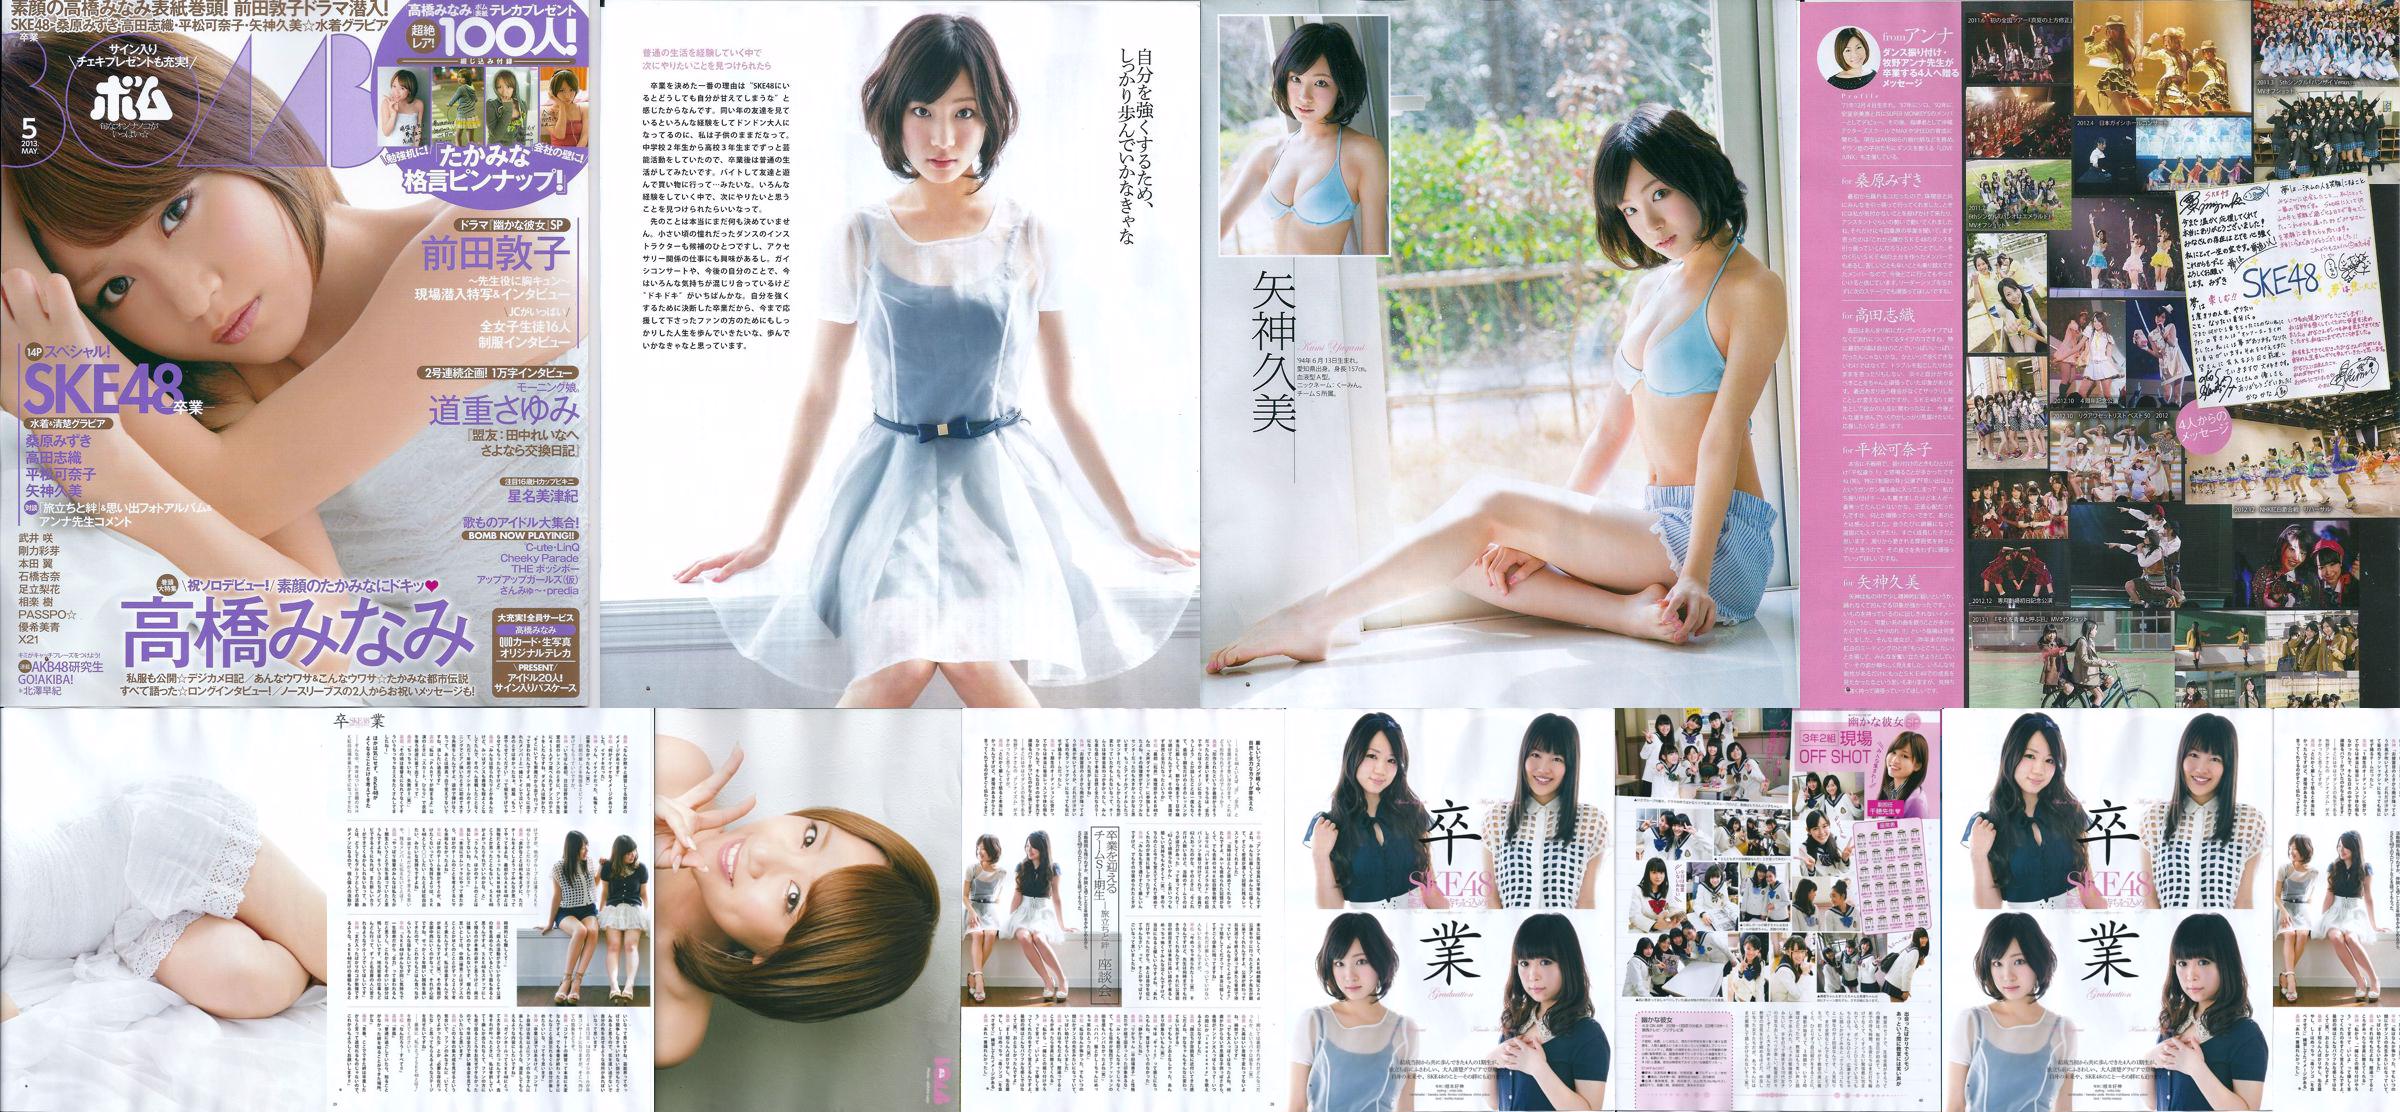 [Bomb Magazine] 2013 No.05 Kumi Yagami Minami Takahashi Atsuko Maeda Photo No.751eed Page 2